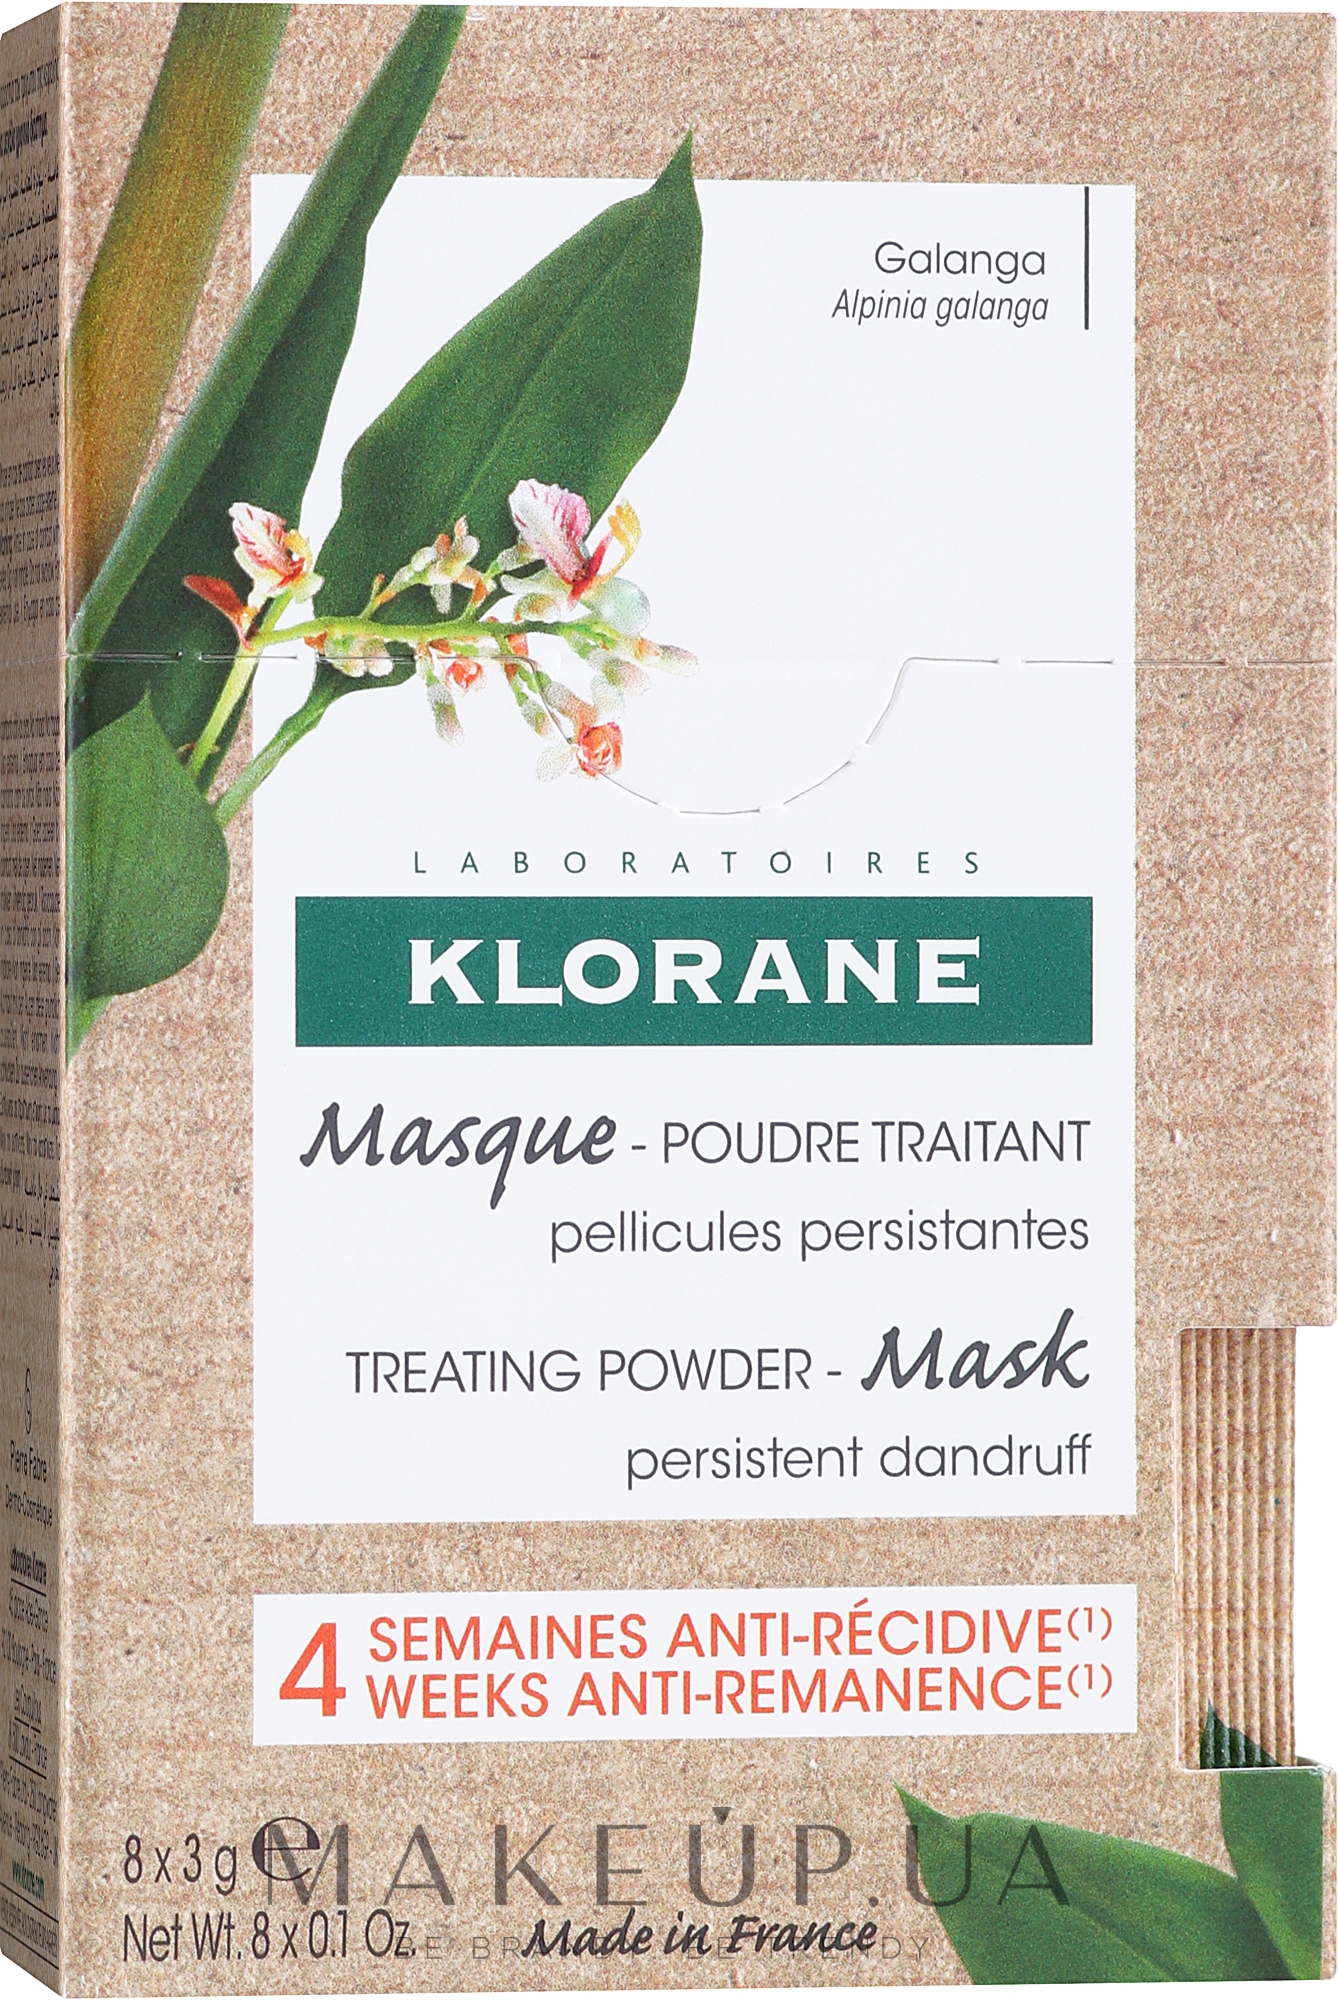 Маска для волос для лечения стойкой перхоти - Klorane Galanga Hair Mask — фото 8x3g